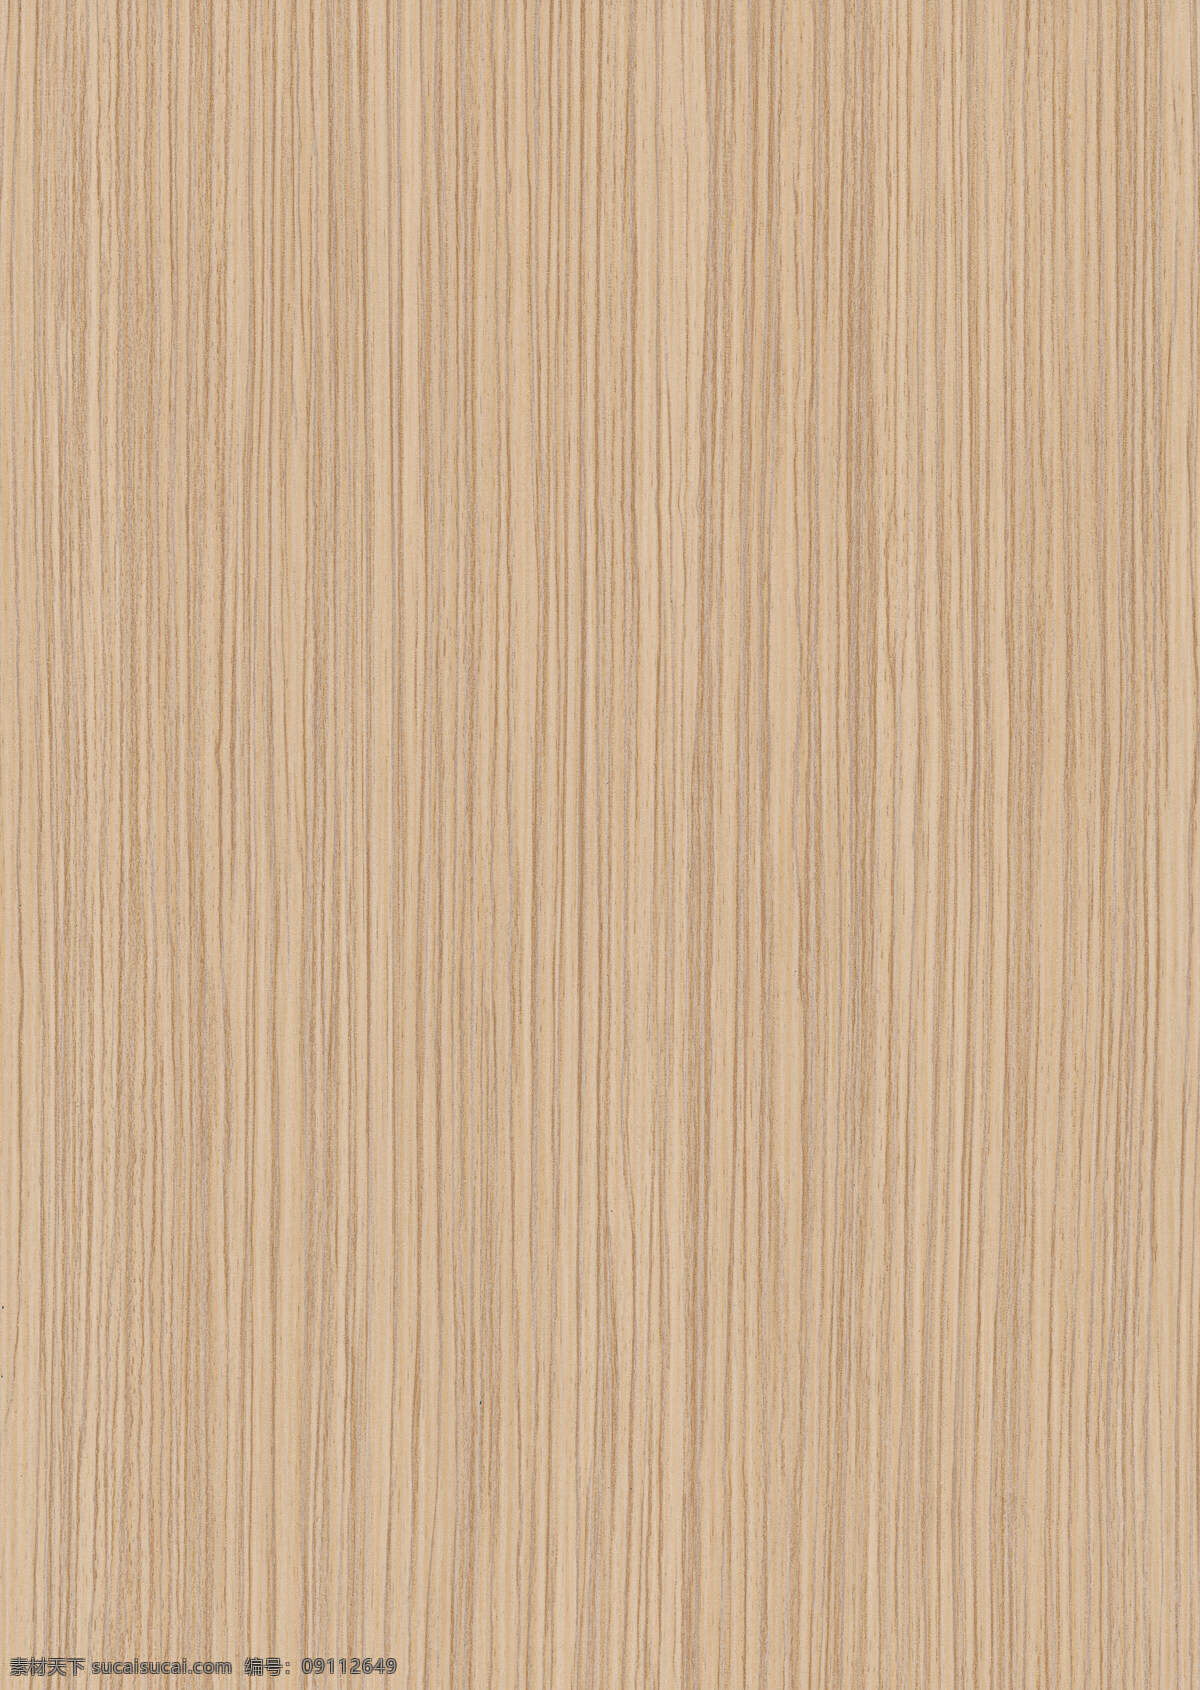 高清 条纹 木板 纹理 图 木纹 背景素材 材质贴图 高清木纹 木地板 堆叠木纹 室内设计 木纹纹理 木质纹理 地板 木头 木板背景